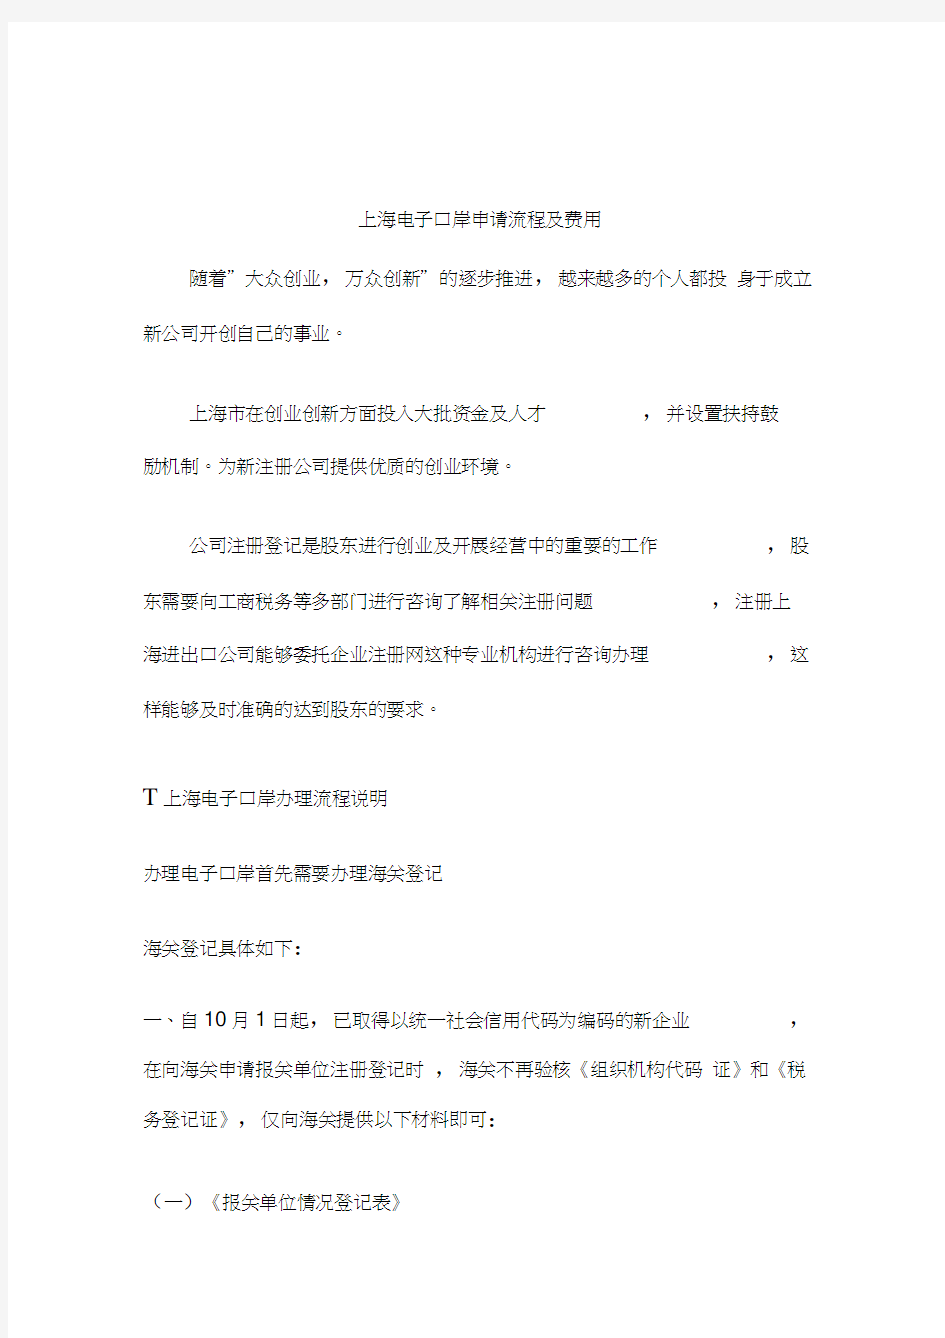 上海电子口岸办理流程模板